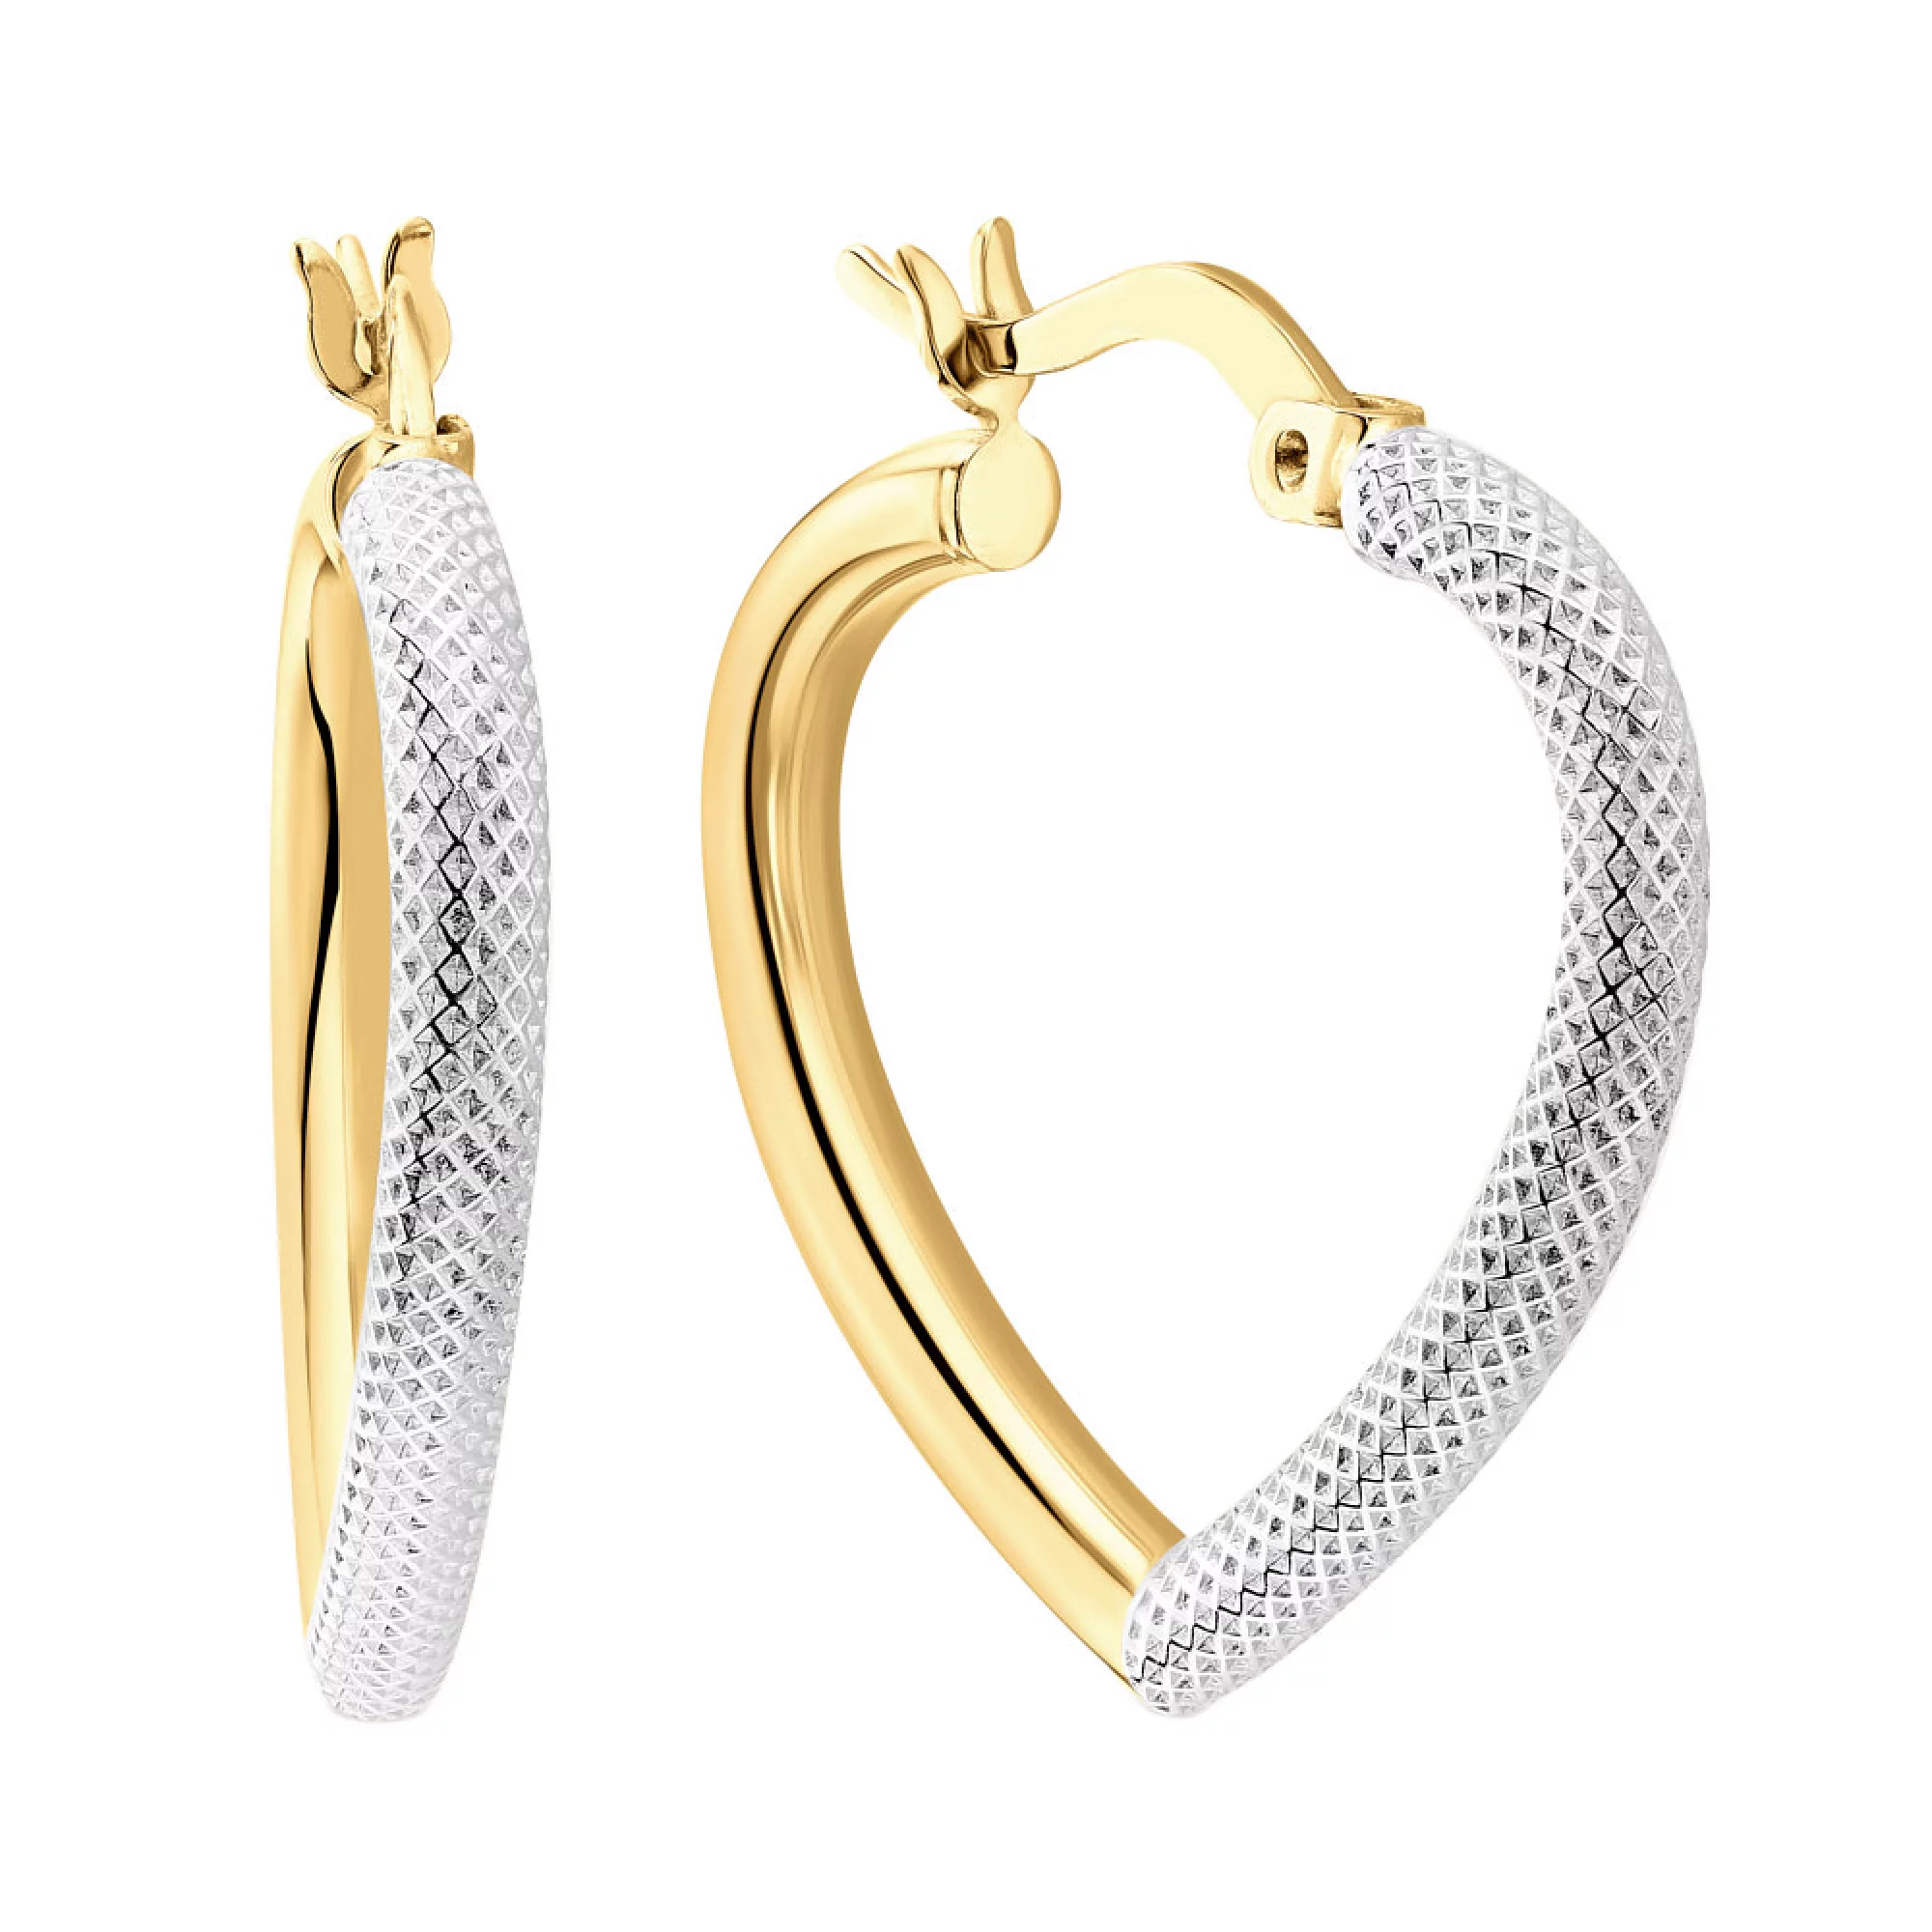 Сережки-кільця в жовтому та білому золоті з алмазною гранню у формі серця - 1563281 – зображення 1